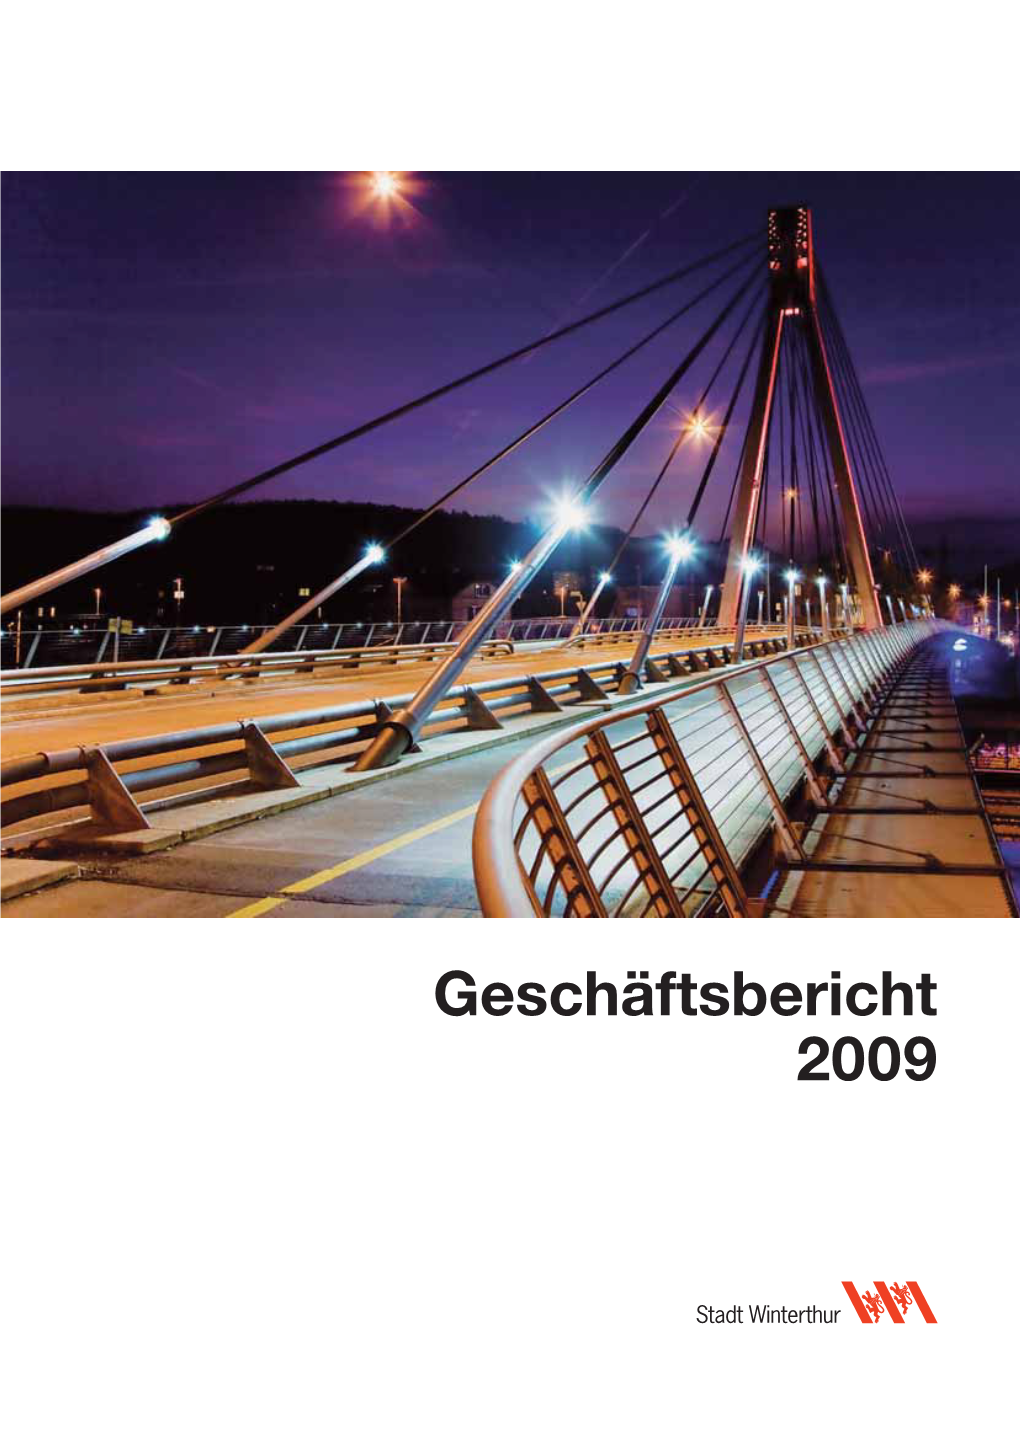 Geschäftsbericht 2009 Titelbild: Storchenbrücke Bei Nacht (Bild: Markus Ronner) Inhalt Seite